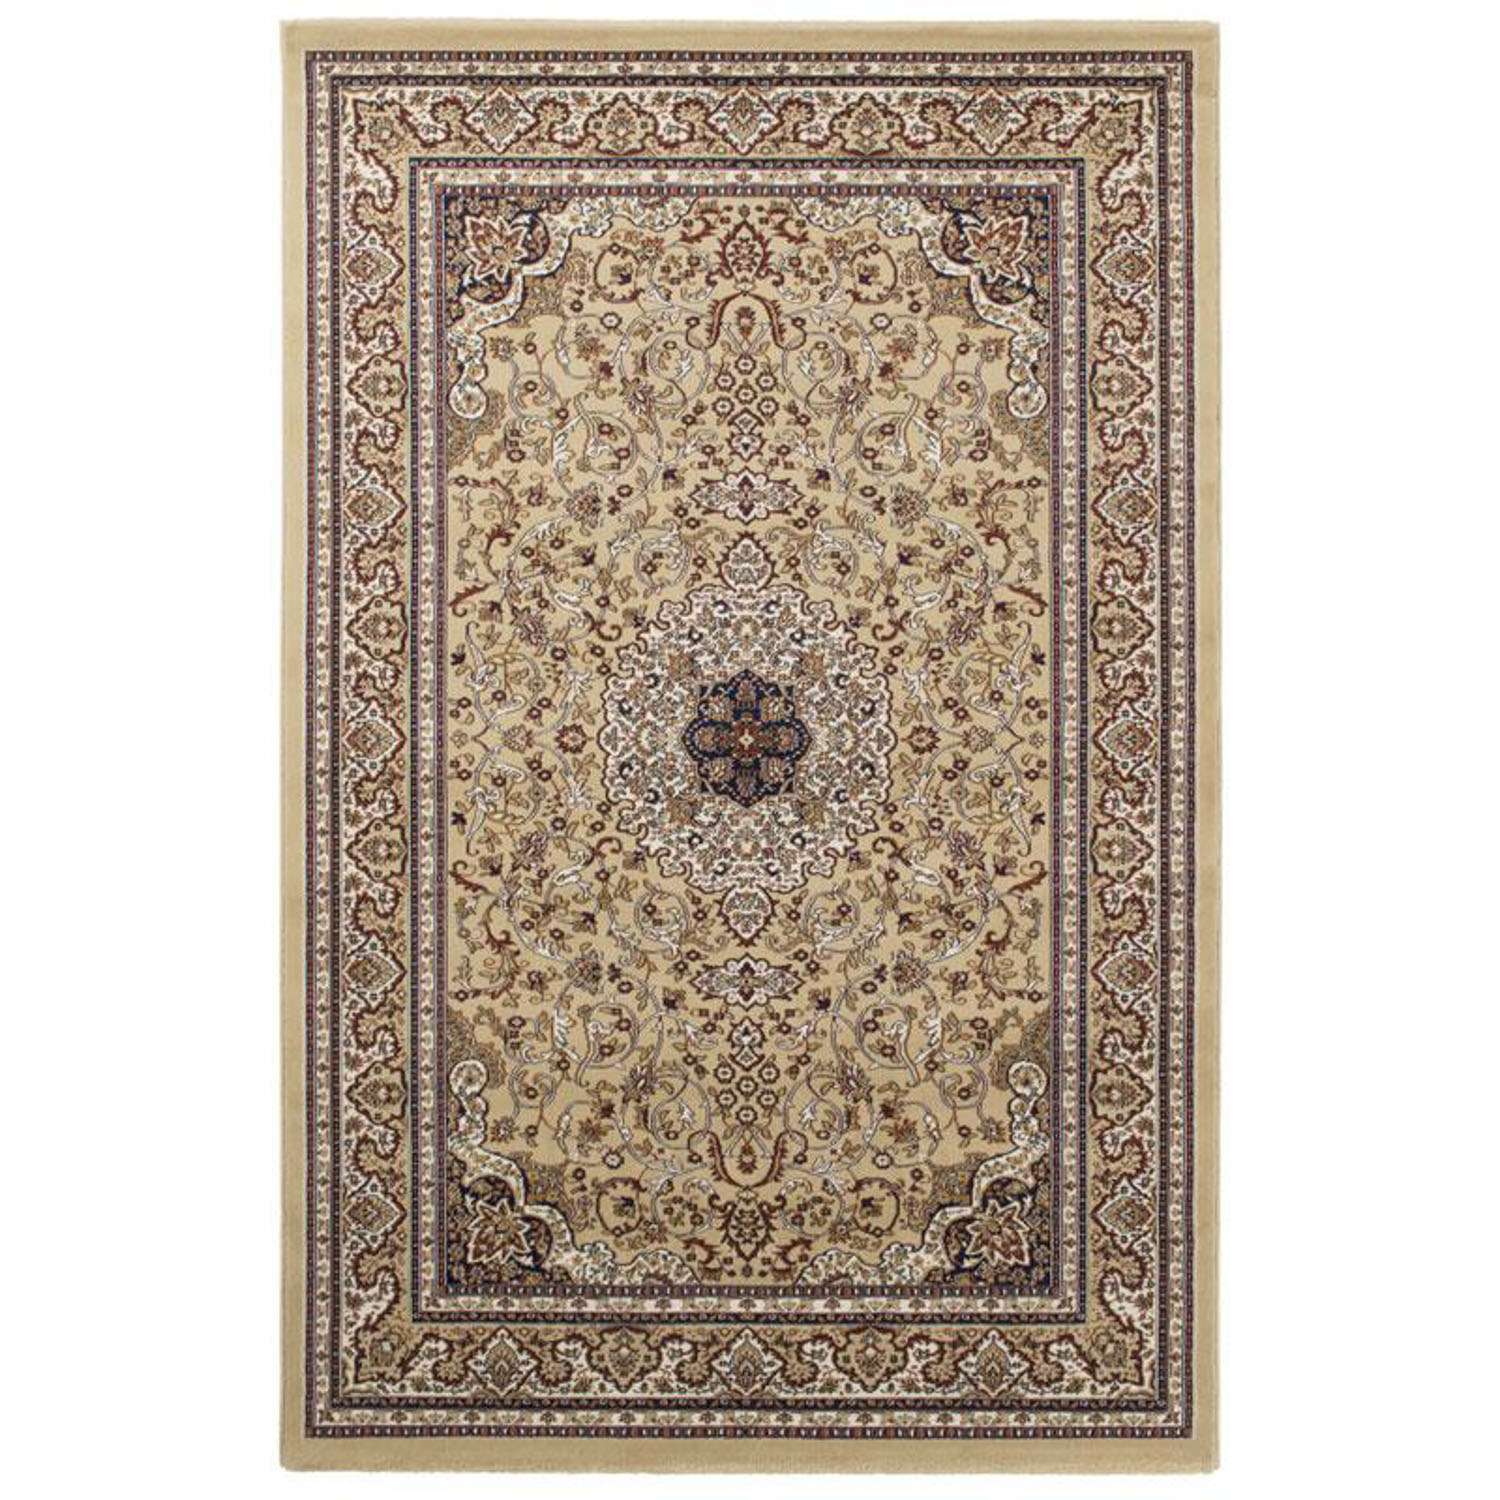 Orientální koberec - Vincenza - obdélníkový